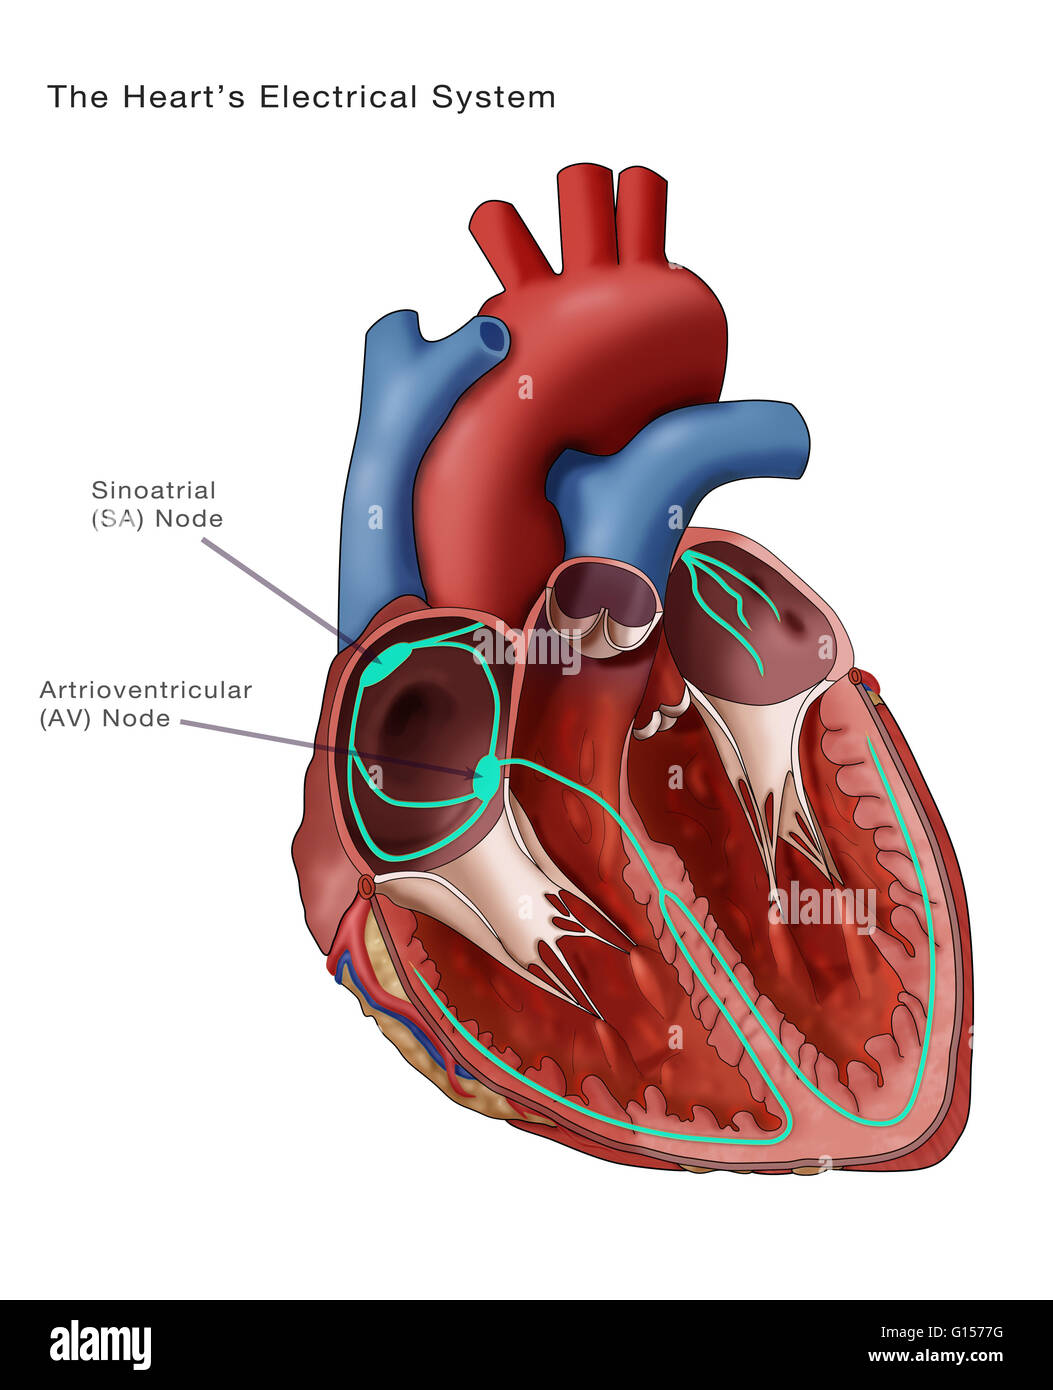 Abbildung zeigt das Herz Elektrik. Der Sinusknoten und Atrioventricular Knoten sind kommentiert. Der sinoatrial (SA)-Knoten (dicken grünen Oval oben links) besteht aus self-excitatory Muskelzellen, die rhythmisch auf rund 70 Vertrag Stockfoto